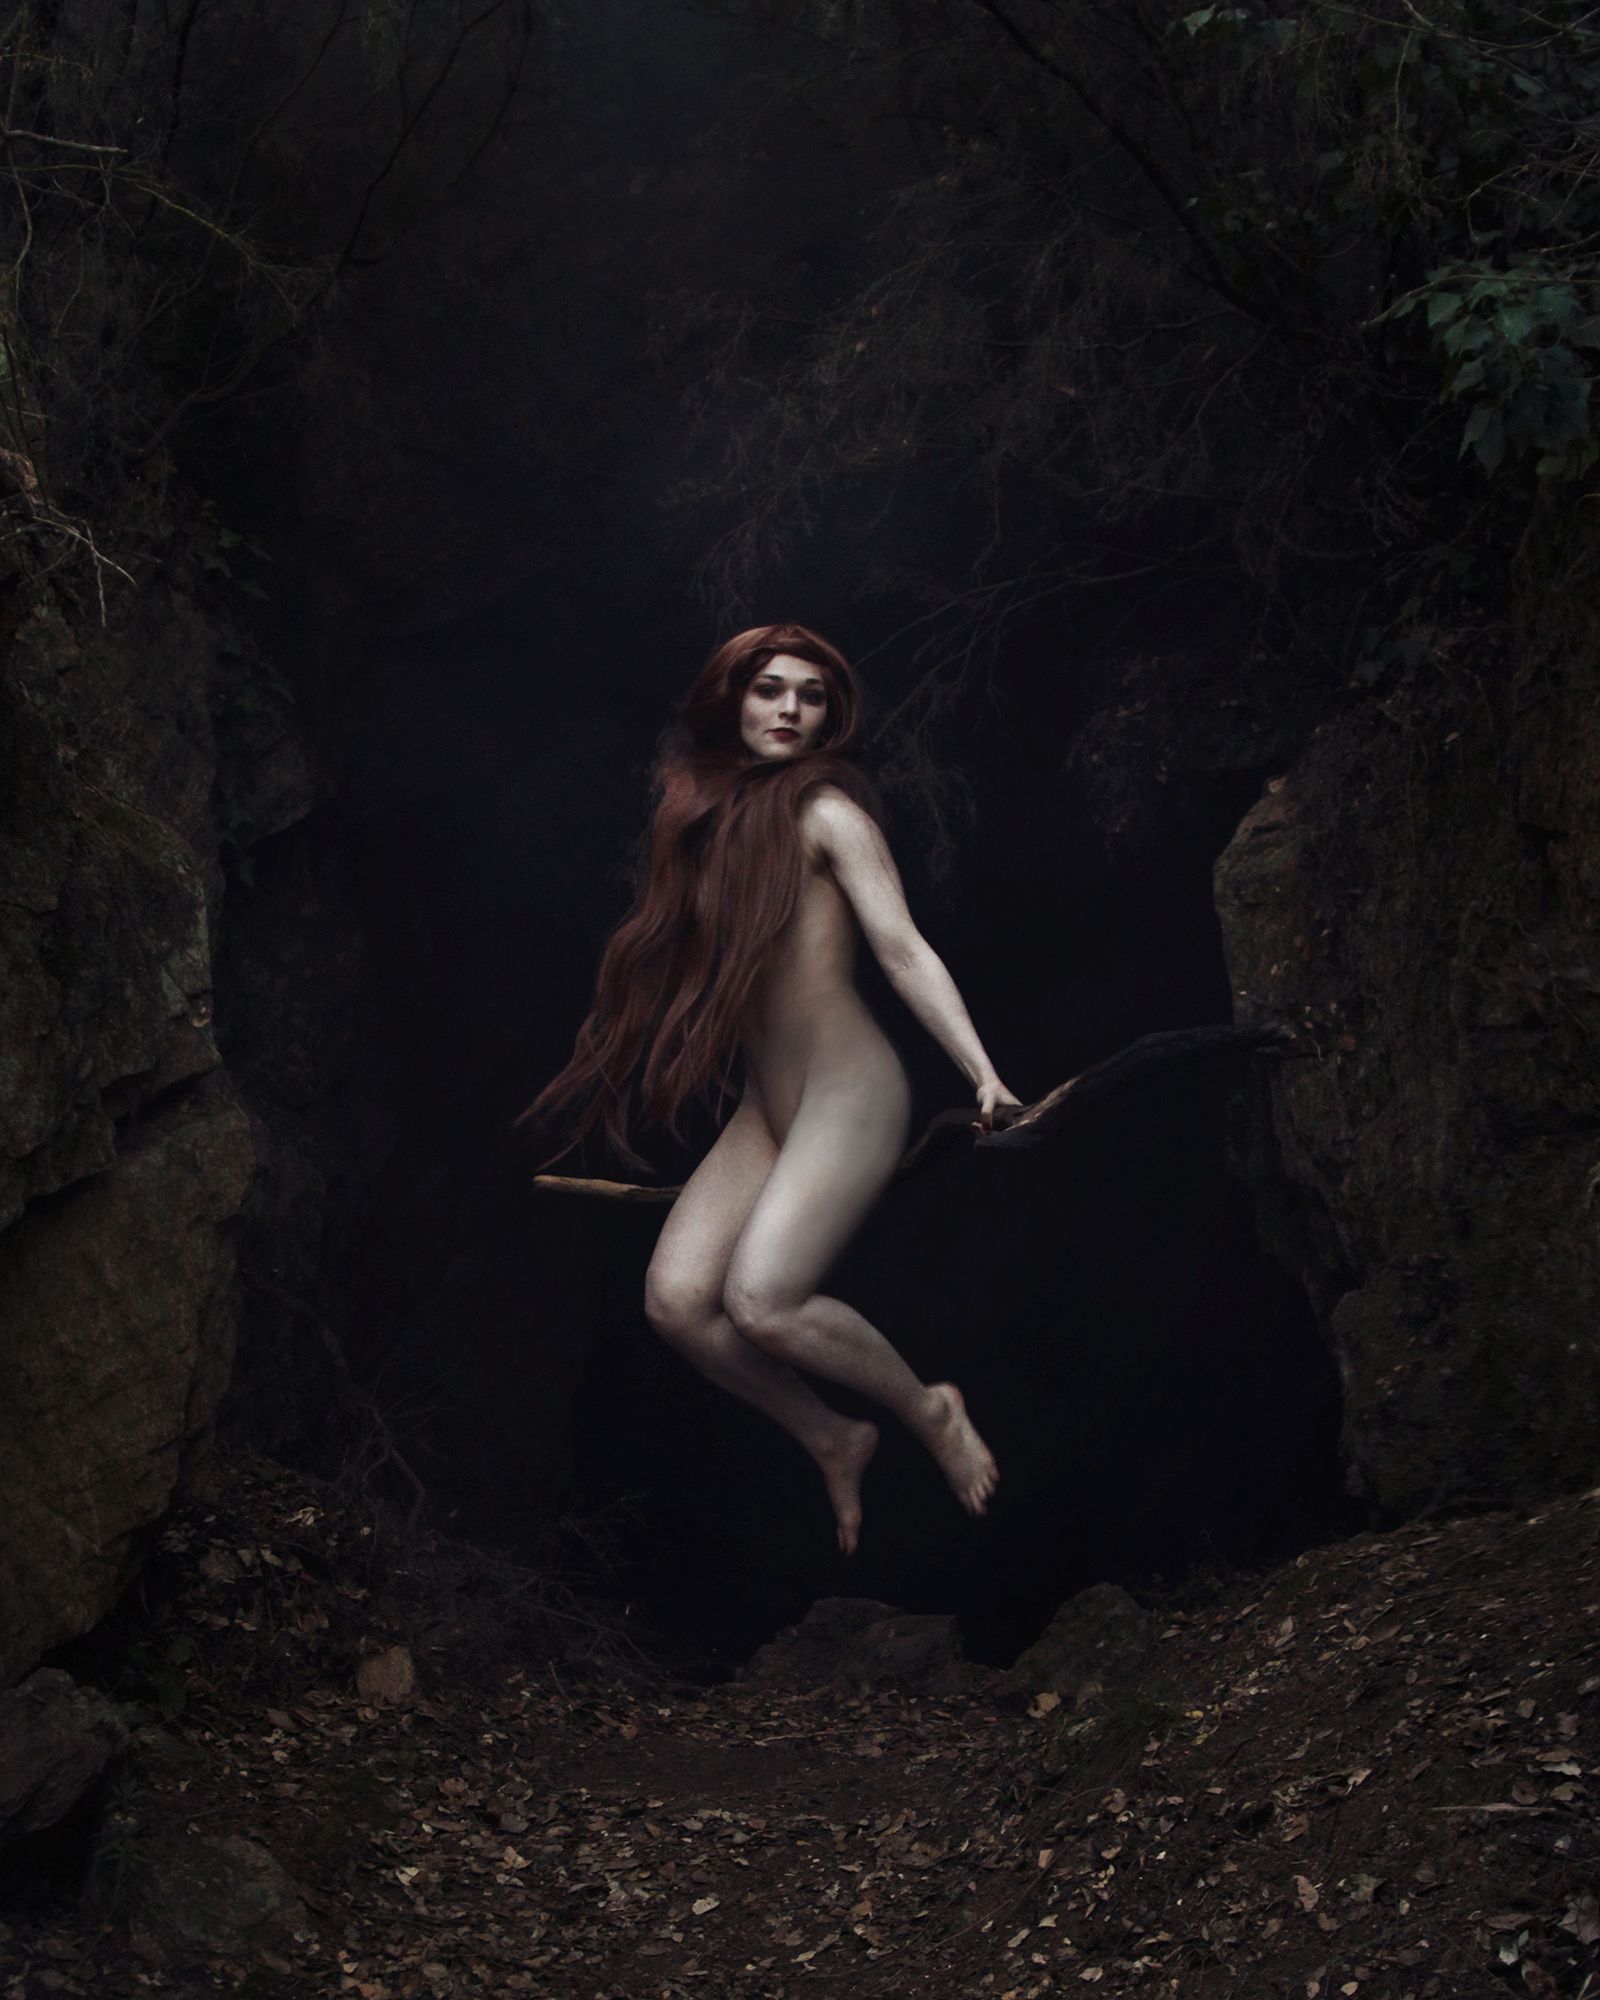 © Natalia Kovachevski - Image from the The Myth of Femininity photography project